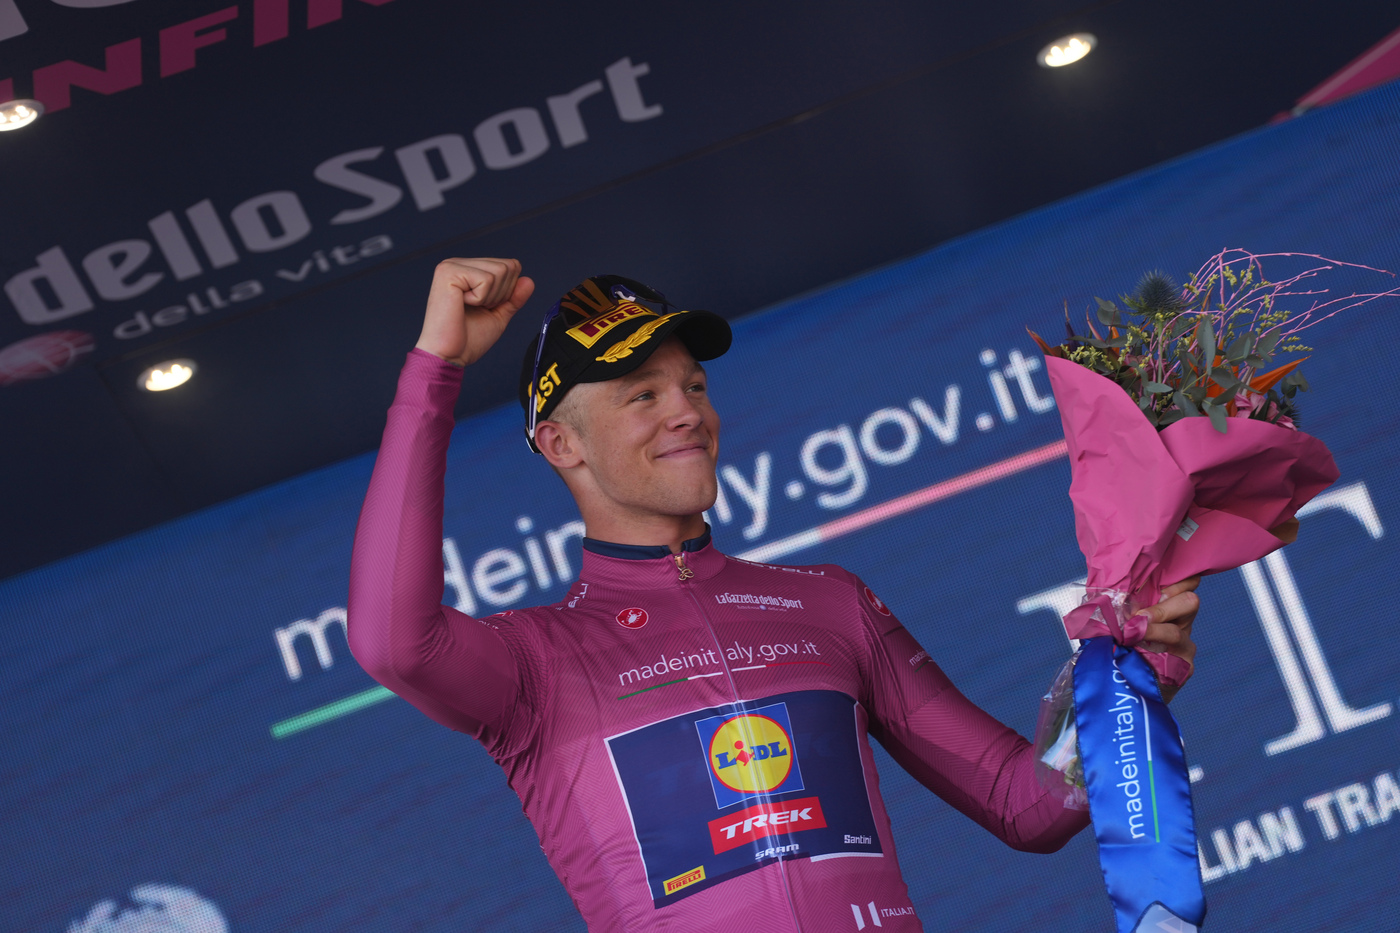 Dal 7 maggio al 7 maggio: Jonathan Milan vince al Giro d’Italia un anno dopo e conquista la maglia ciclamino